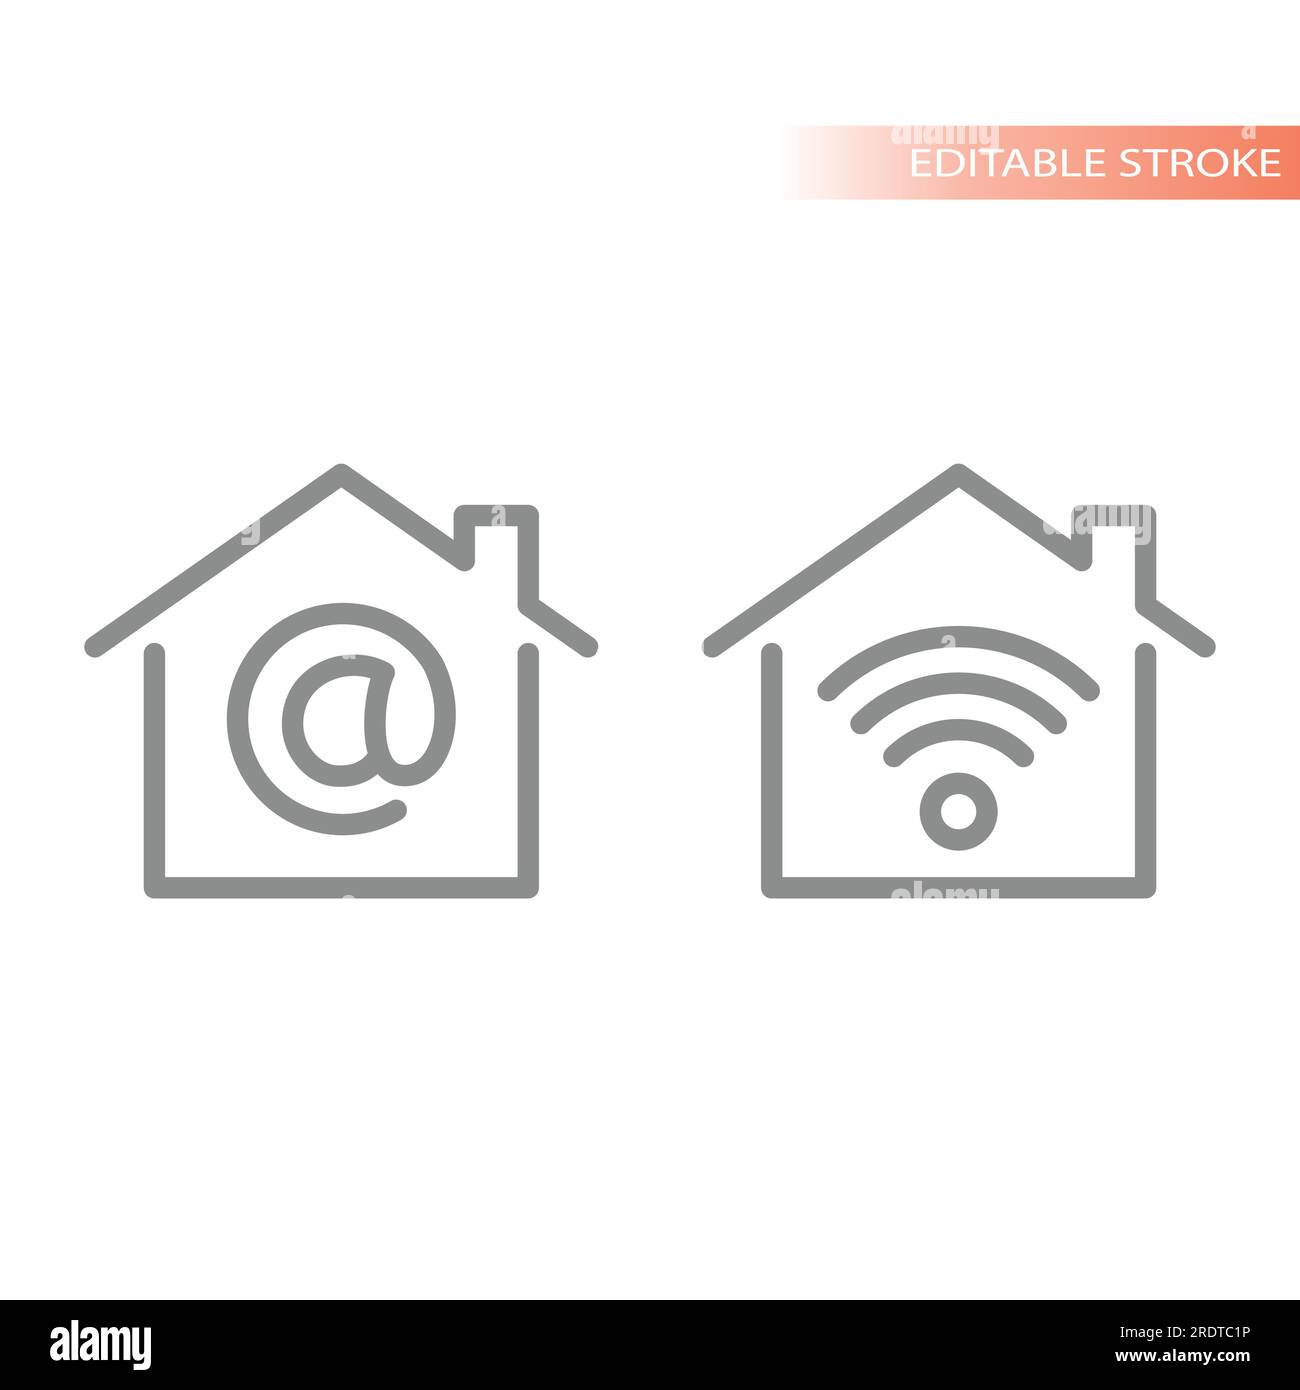 Vektorsymbole für Heim-, Haus- und wi-Fi-Leitungen. At-Symbol, Symbole für Internetumrisse. Stock Vektor